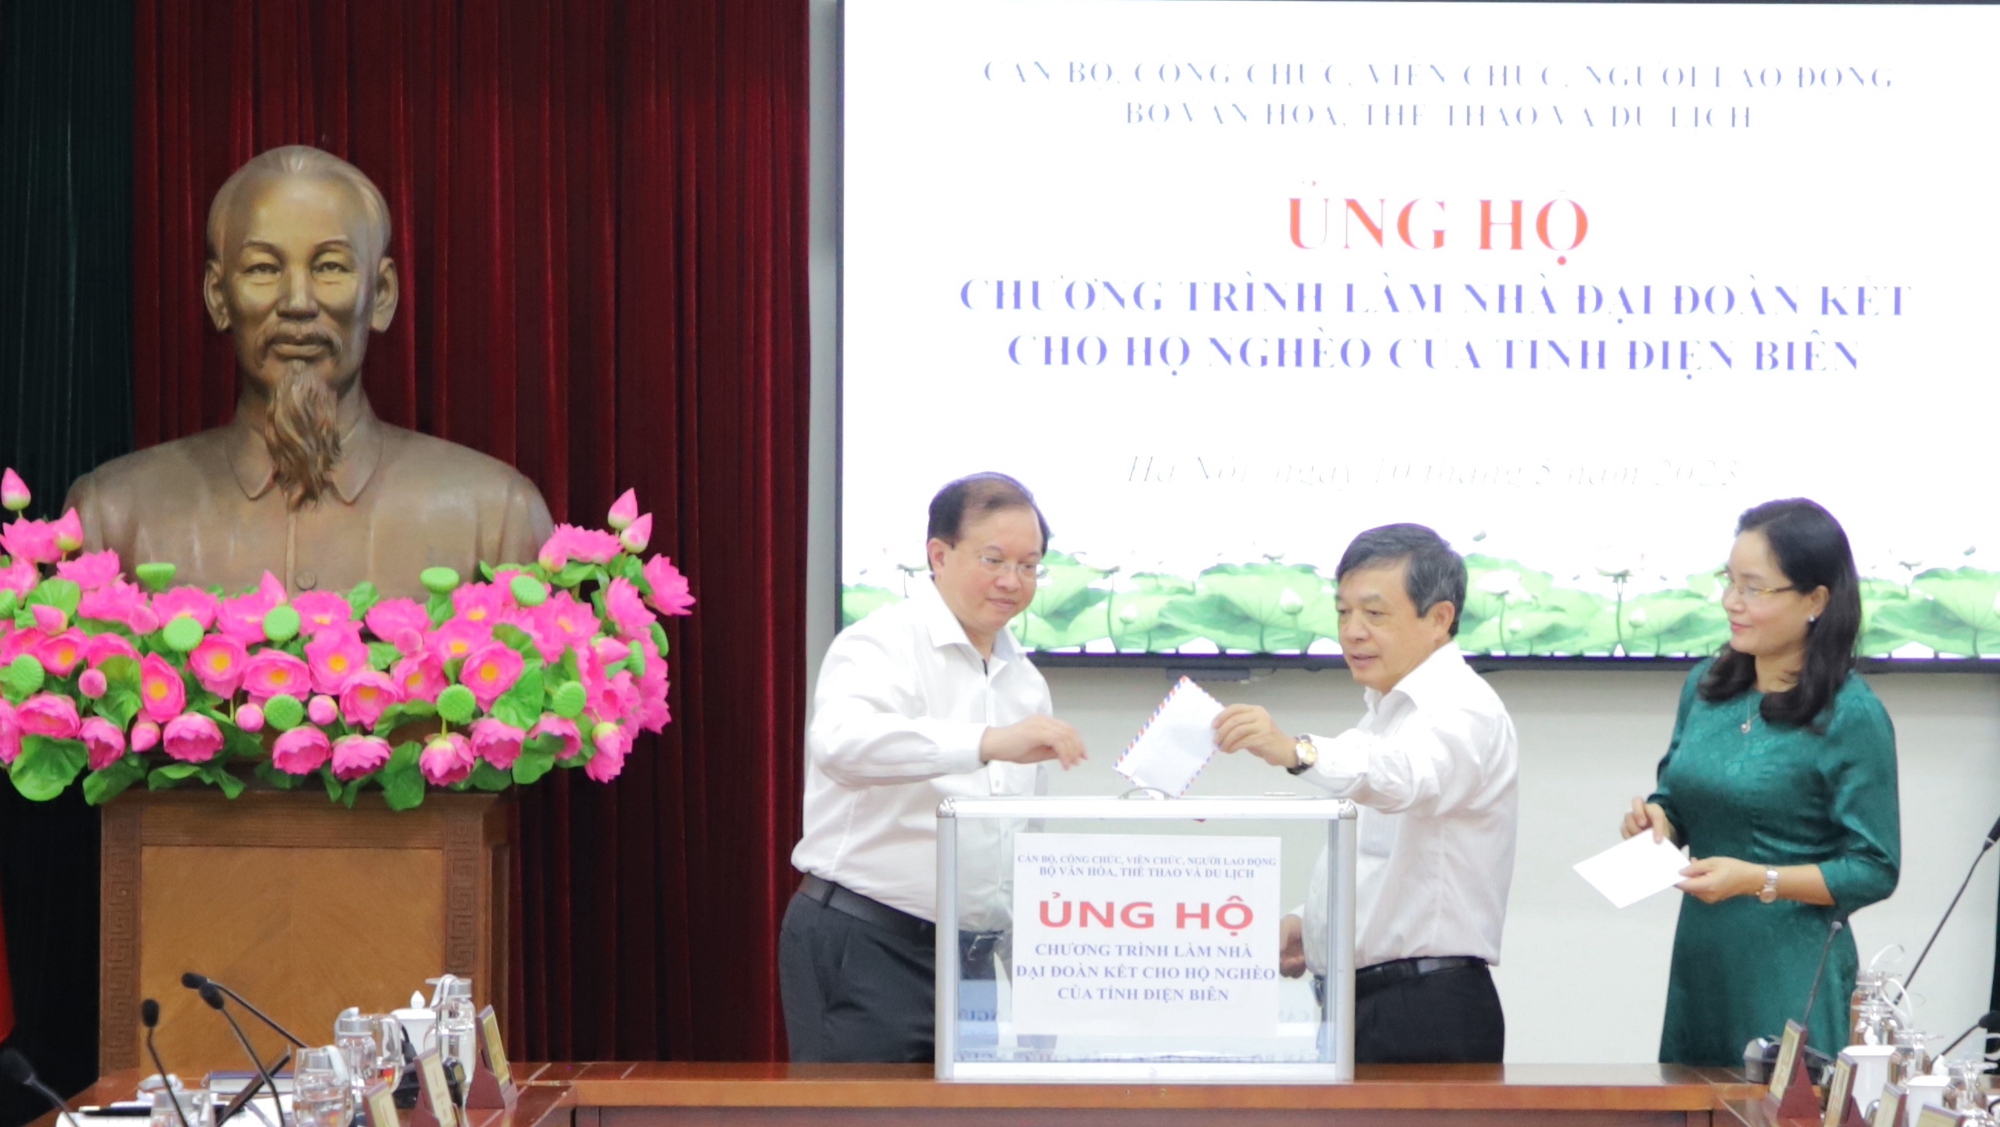 Bộ VHTTDL ủng hộ Chương trình xây nhà đại đoàn kết cho hộ nghèo của tỉnh Điện Biên - Ảnh 4.